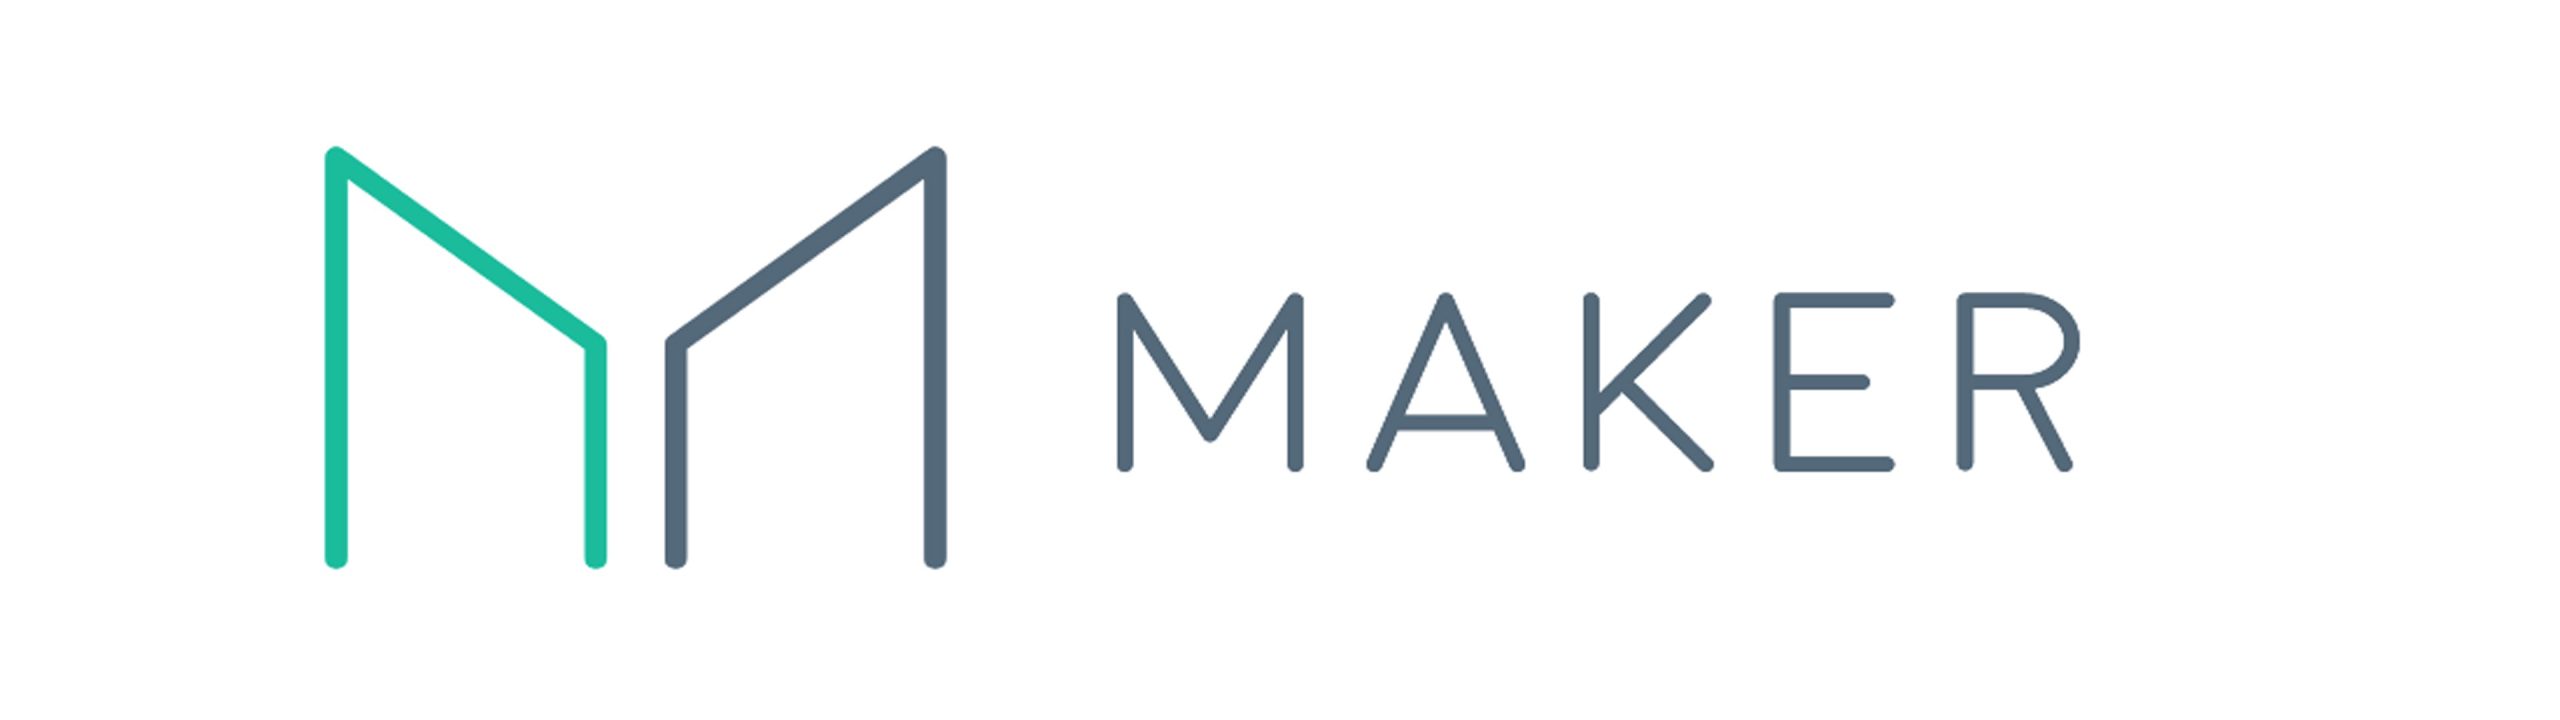 maker logo - crypto dao